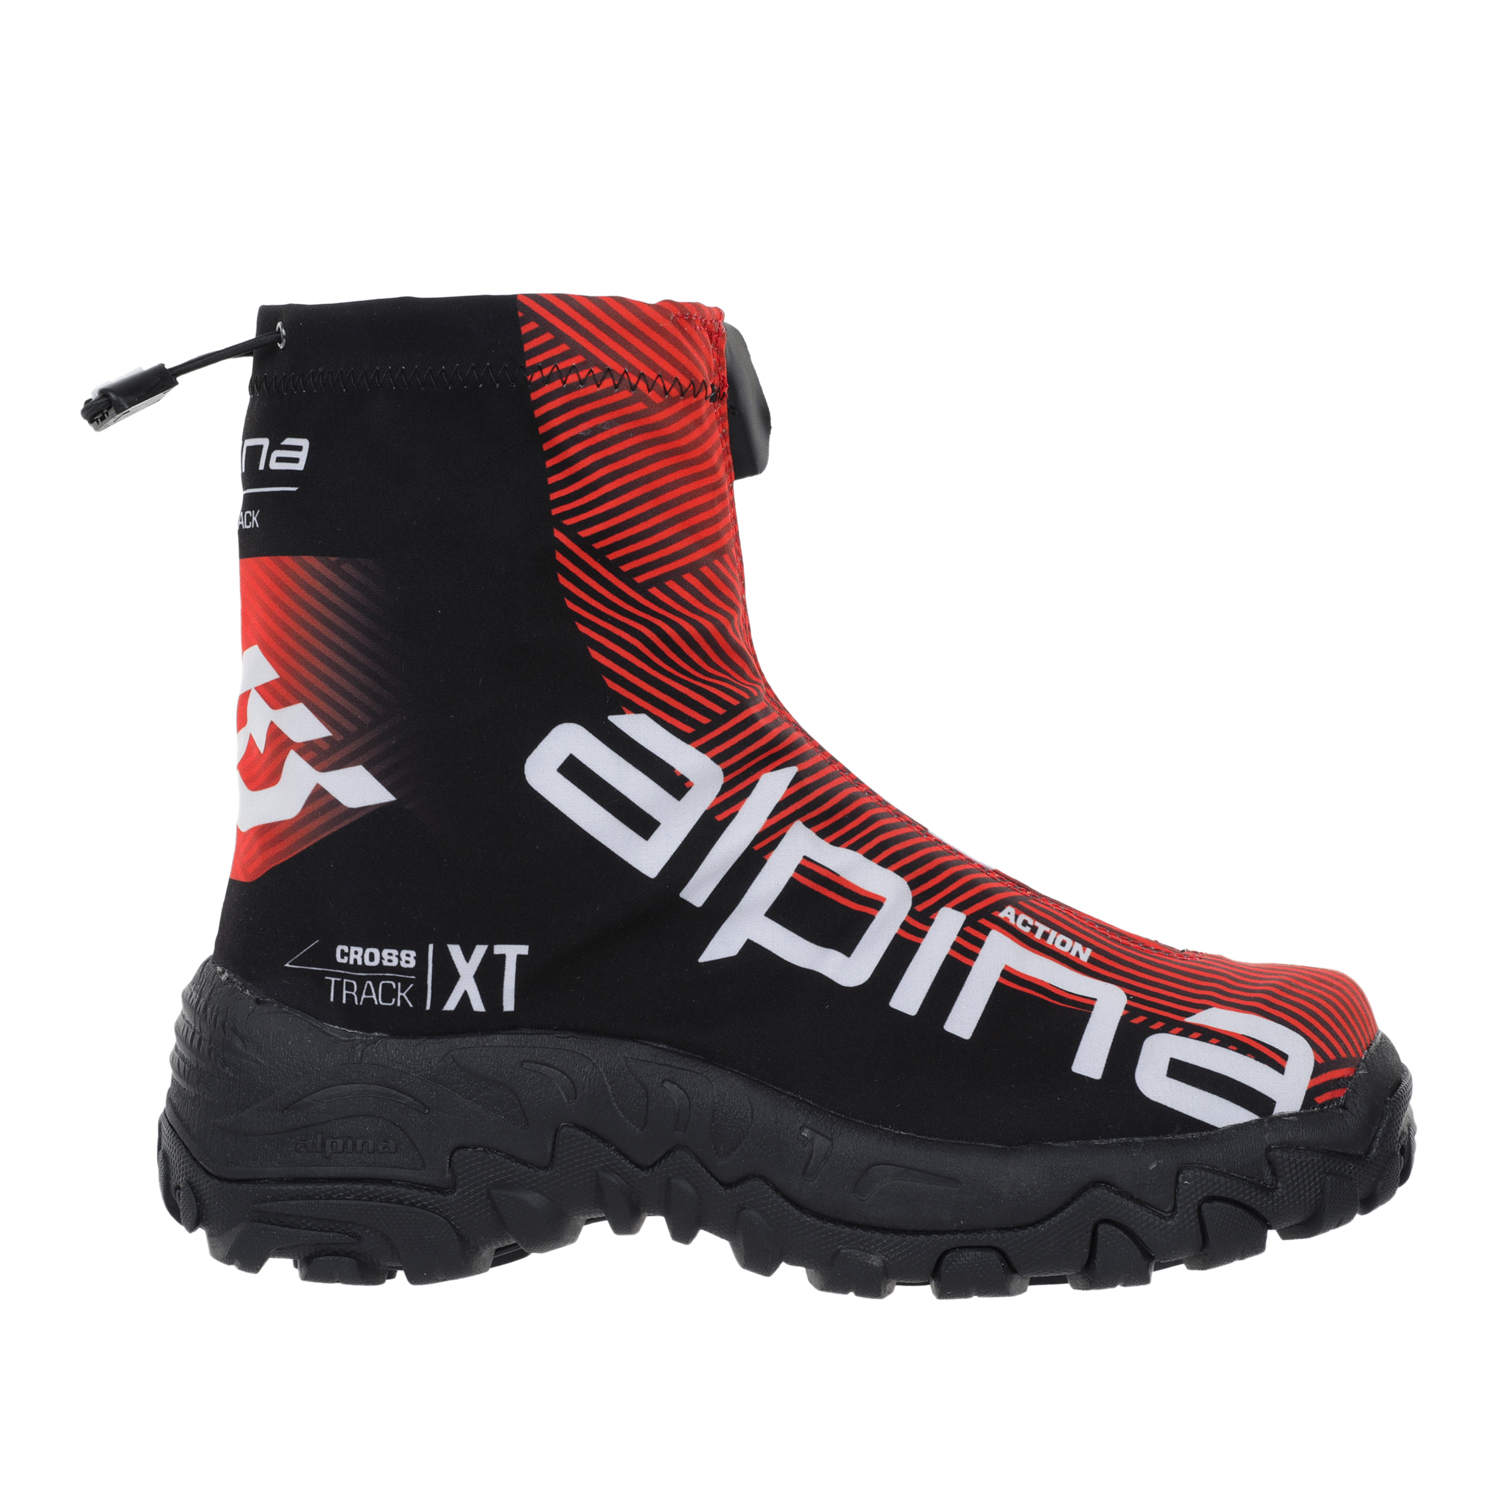 Ботинки Alpina Xt Action, red/black/white, 46 EU